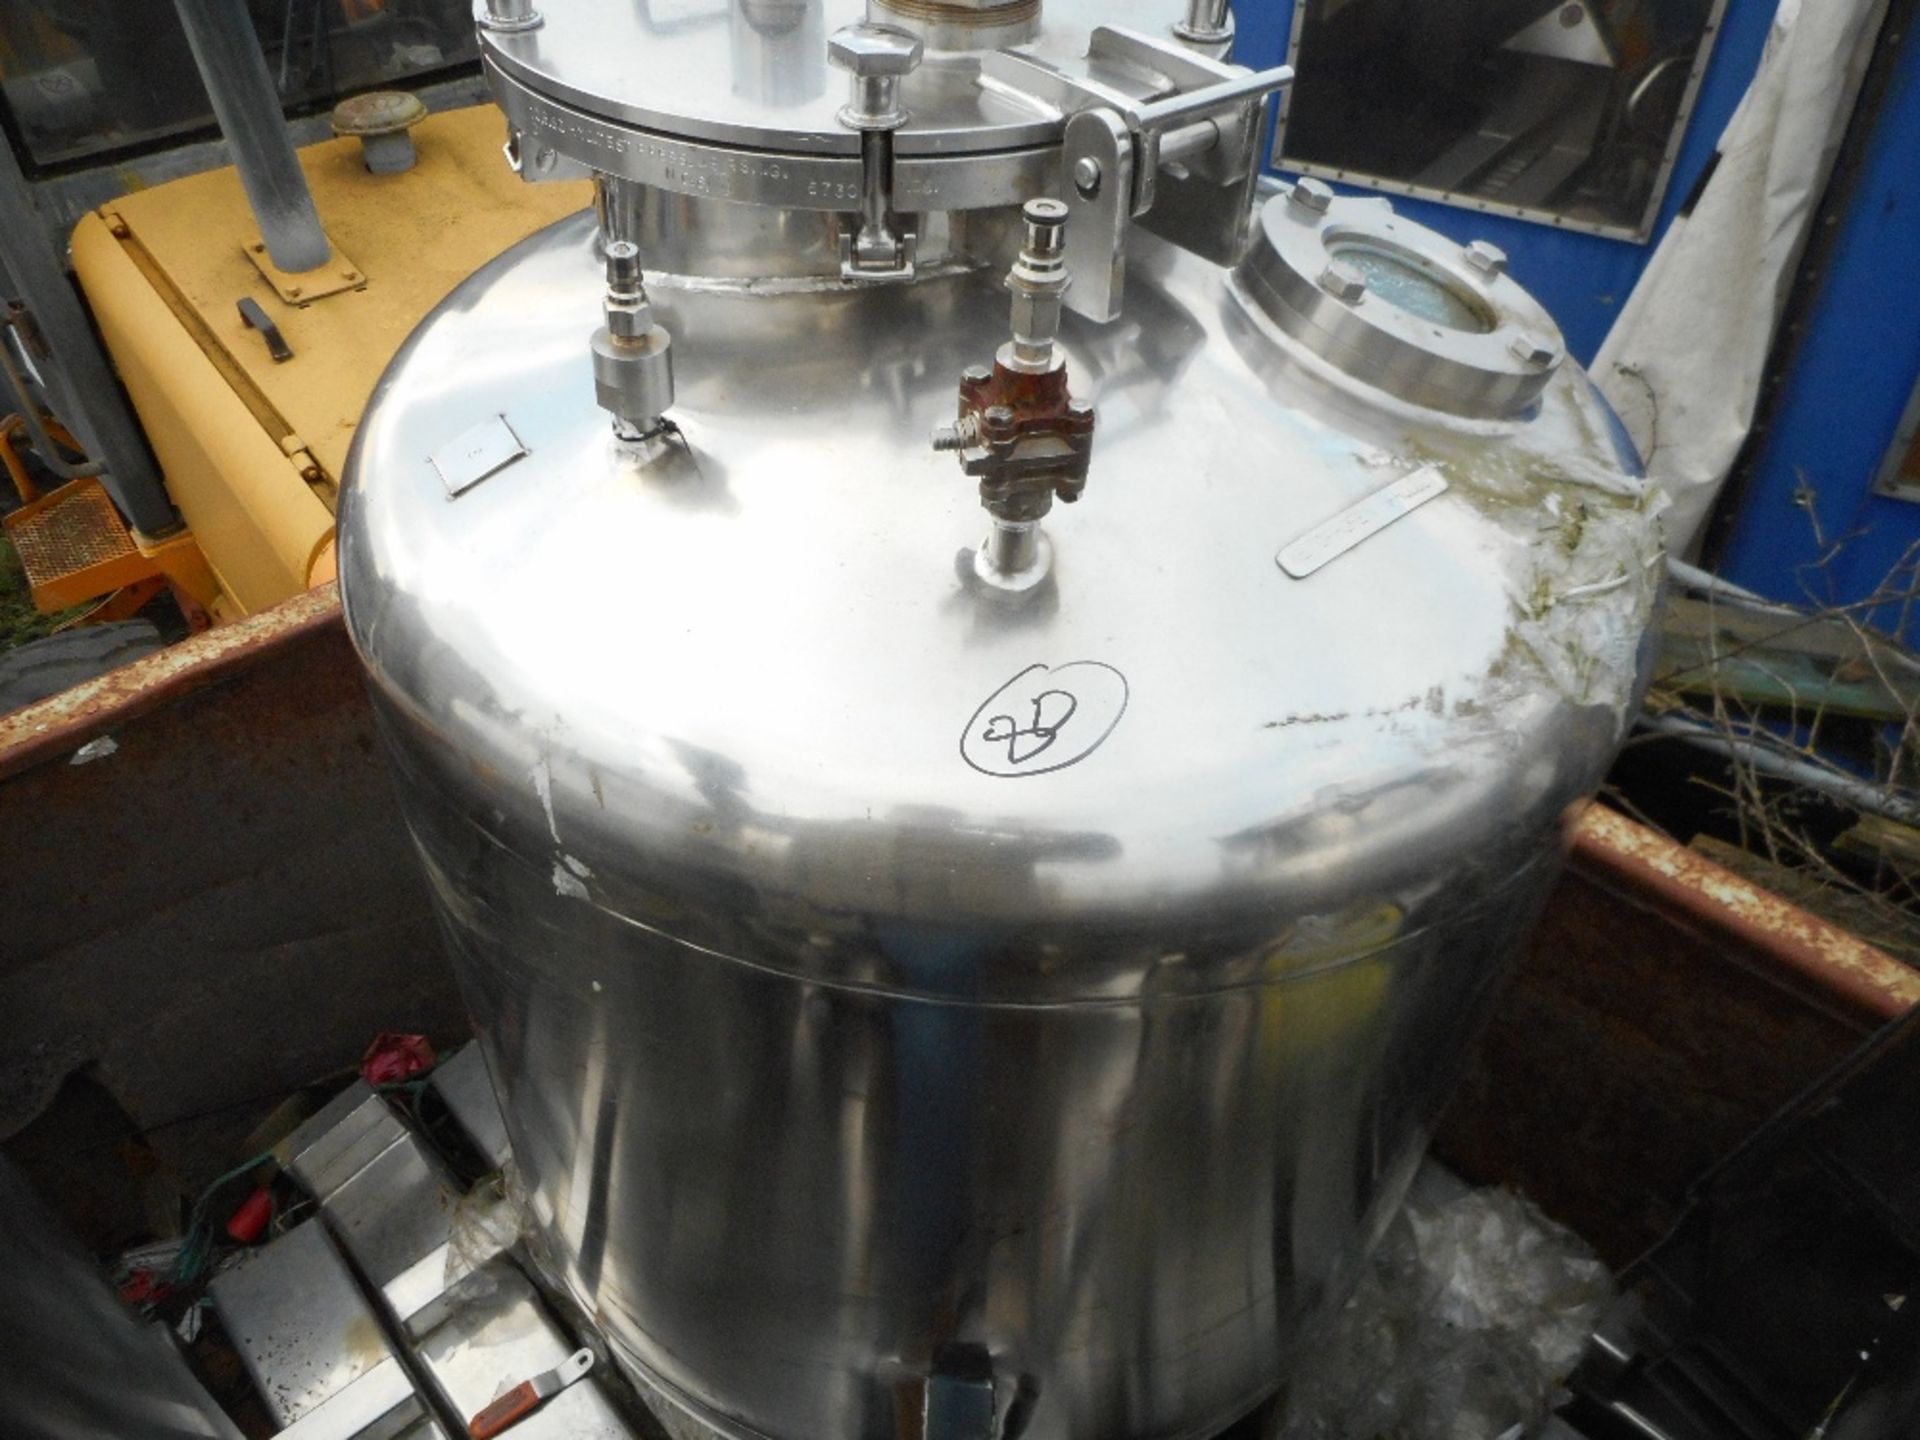 Stainless steel pressure flask/vessel